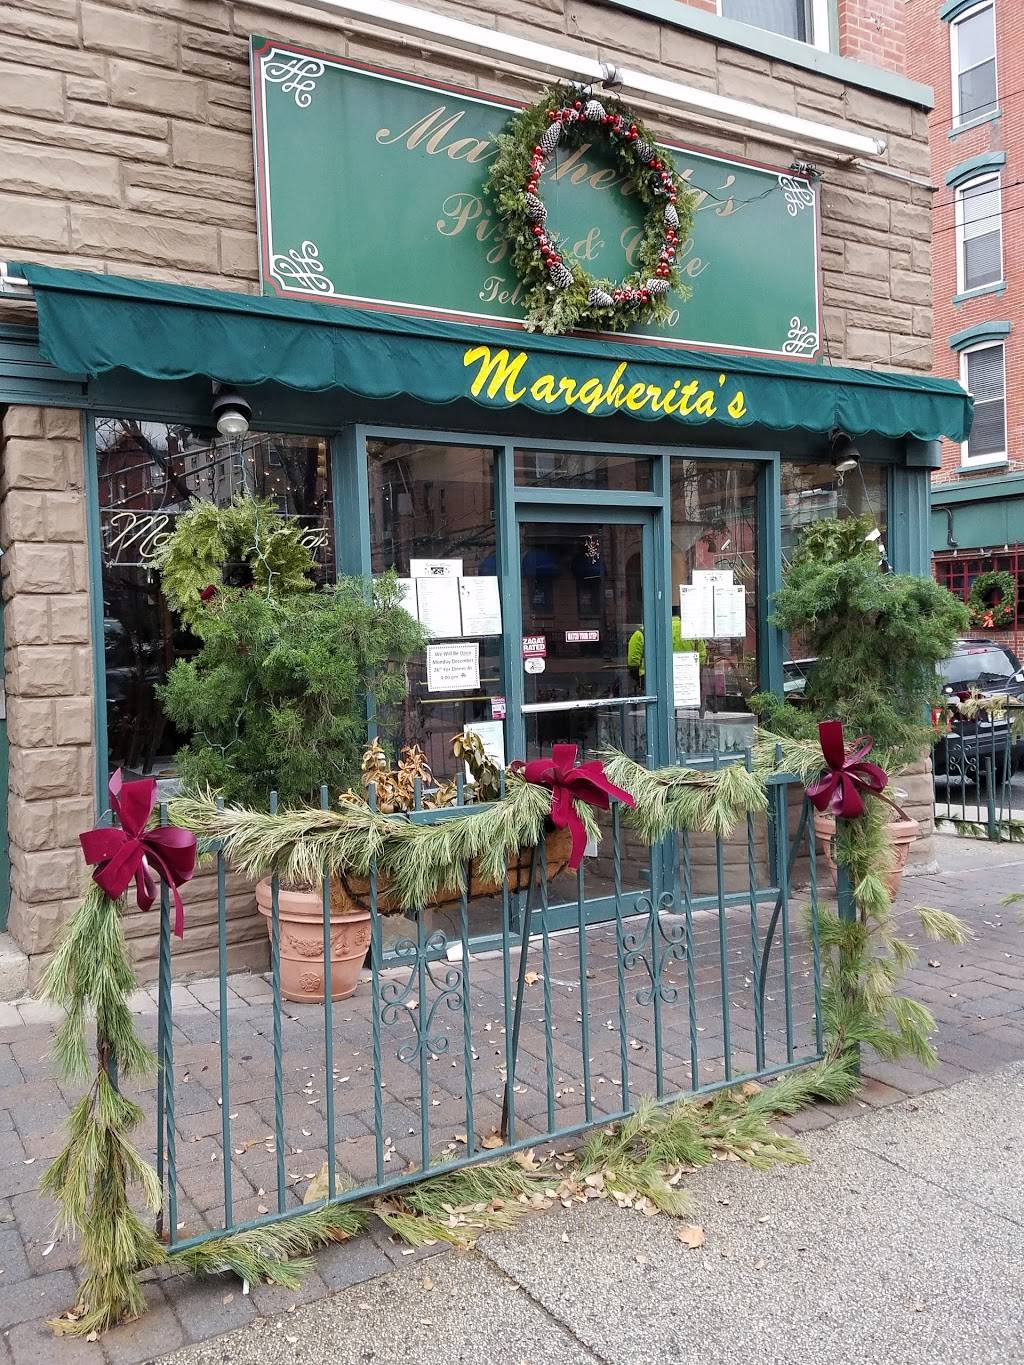 Margheritas Restaurant | meal delivery | 740 Washington St, Hoboken, NJ 07030, USA | 2012222400 OR +1 201-222-2400